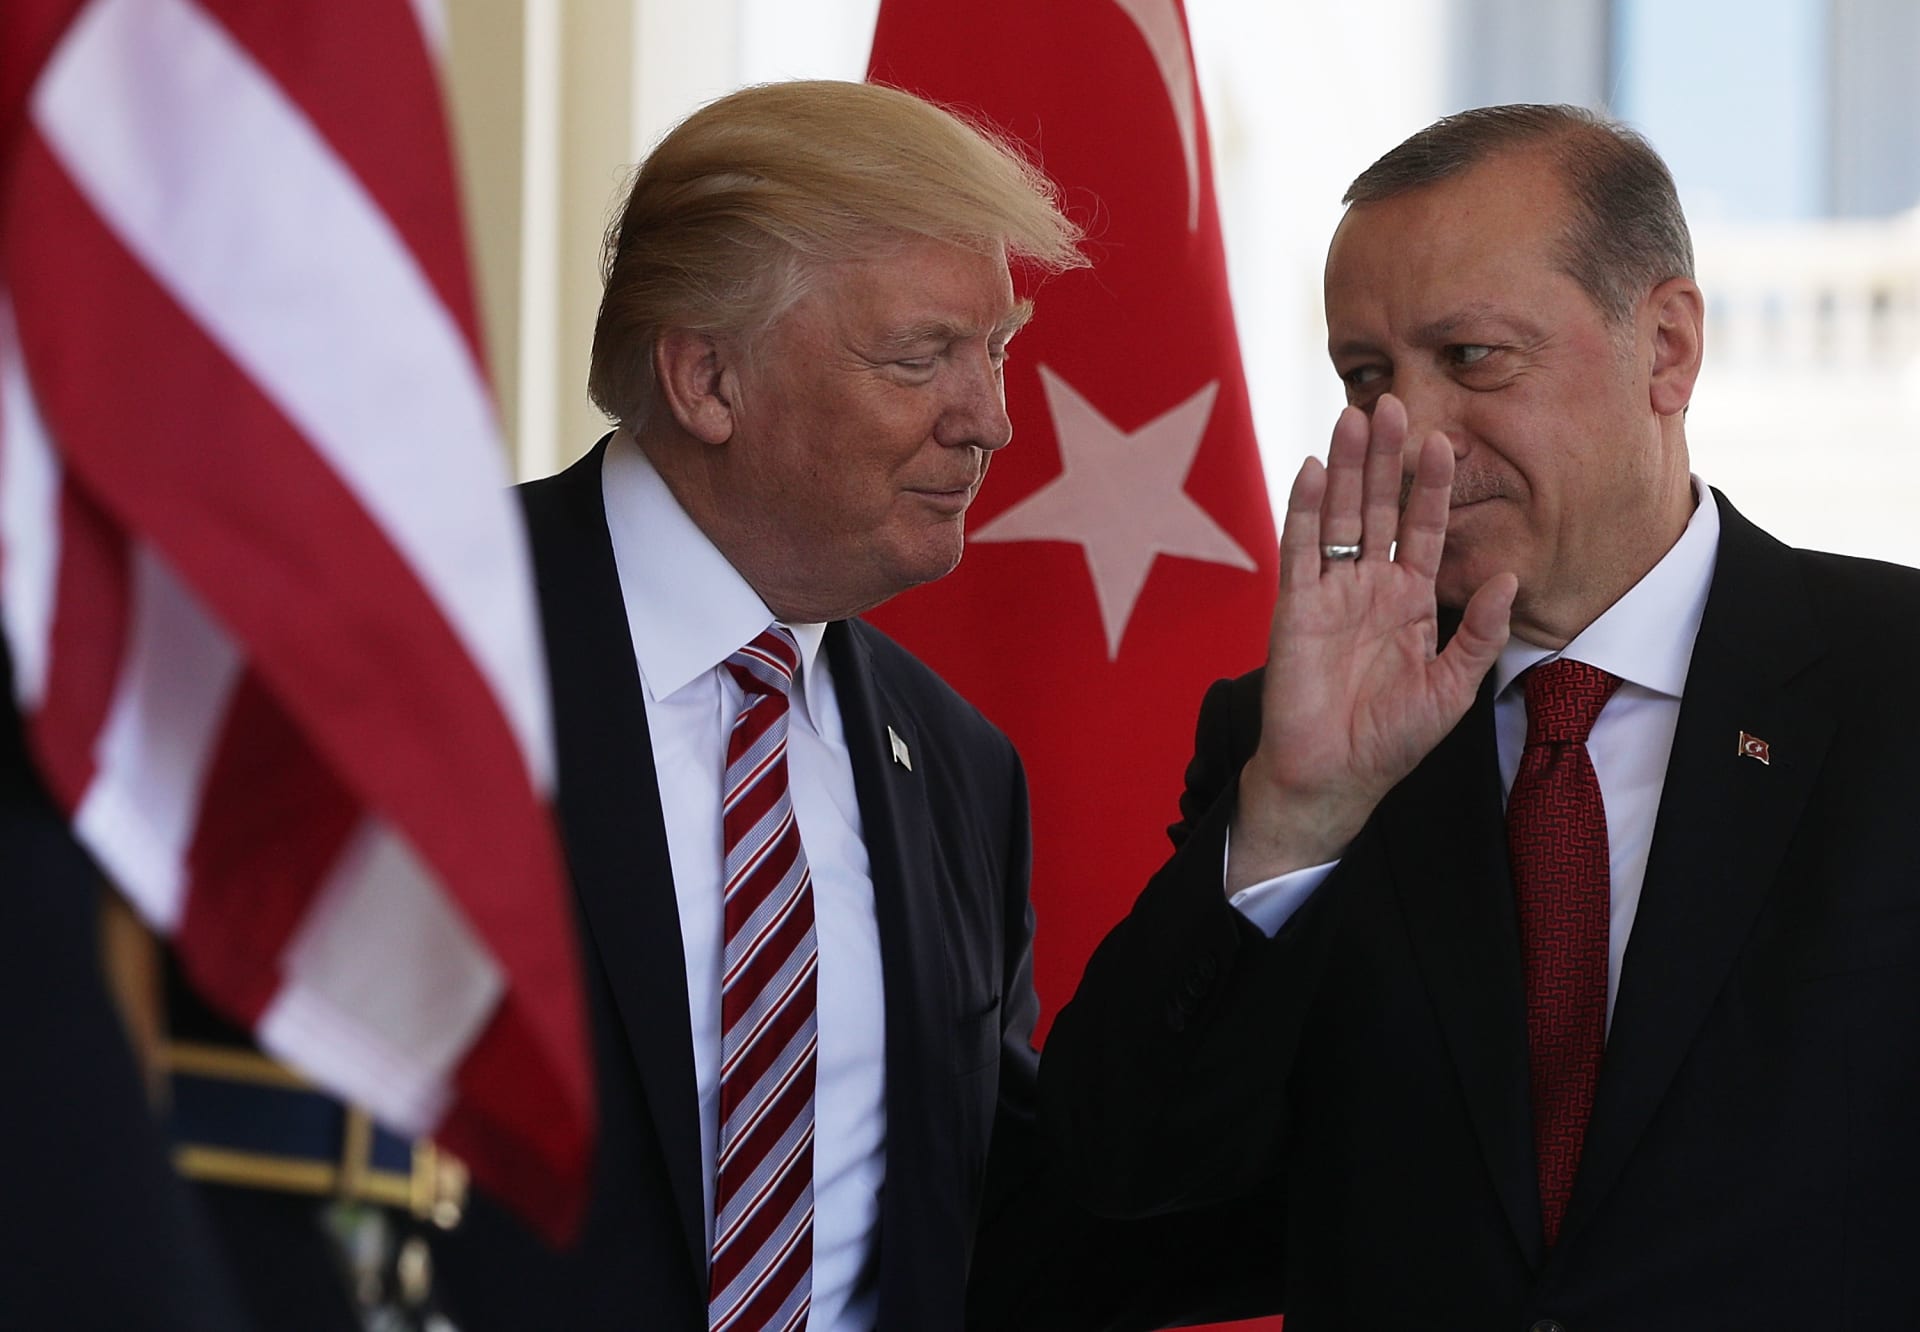 صورة ارشيفية من زيارة أردوغان لأمريكا ولقاء ترامب العام 2017